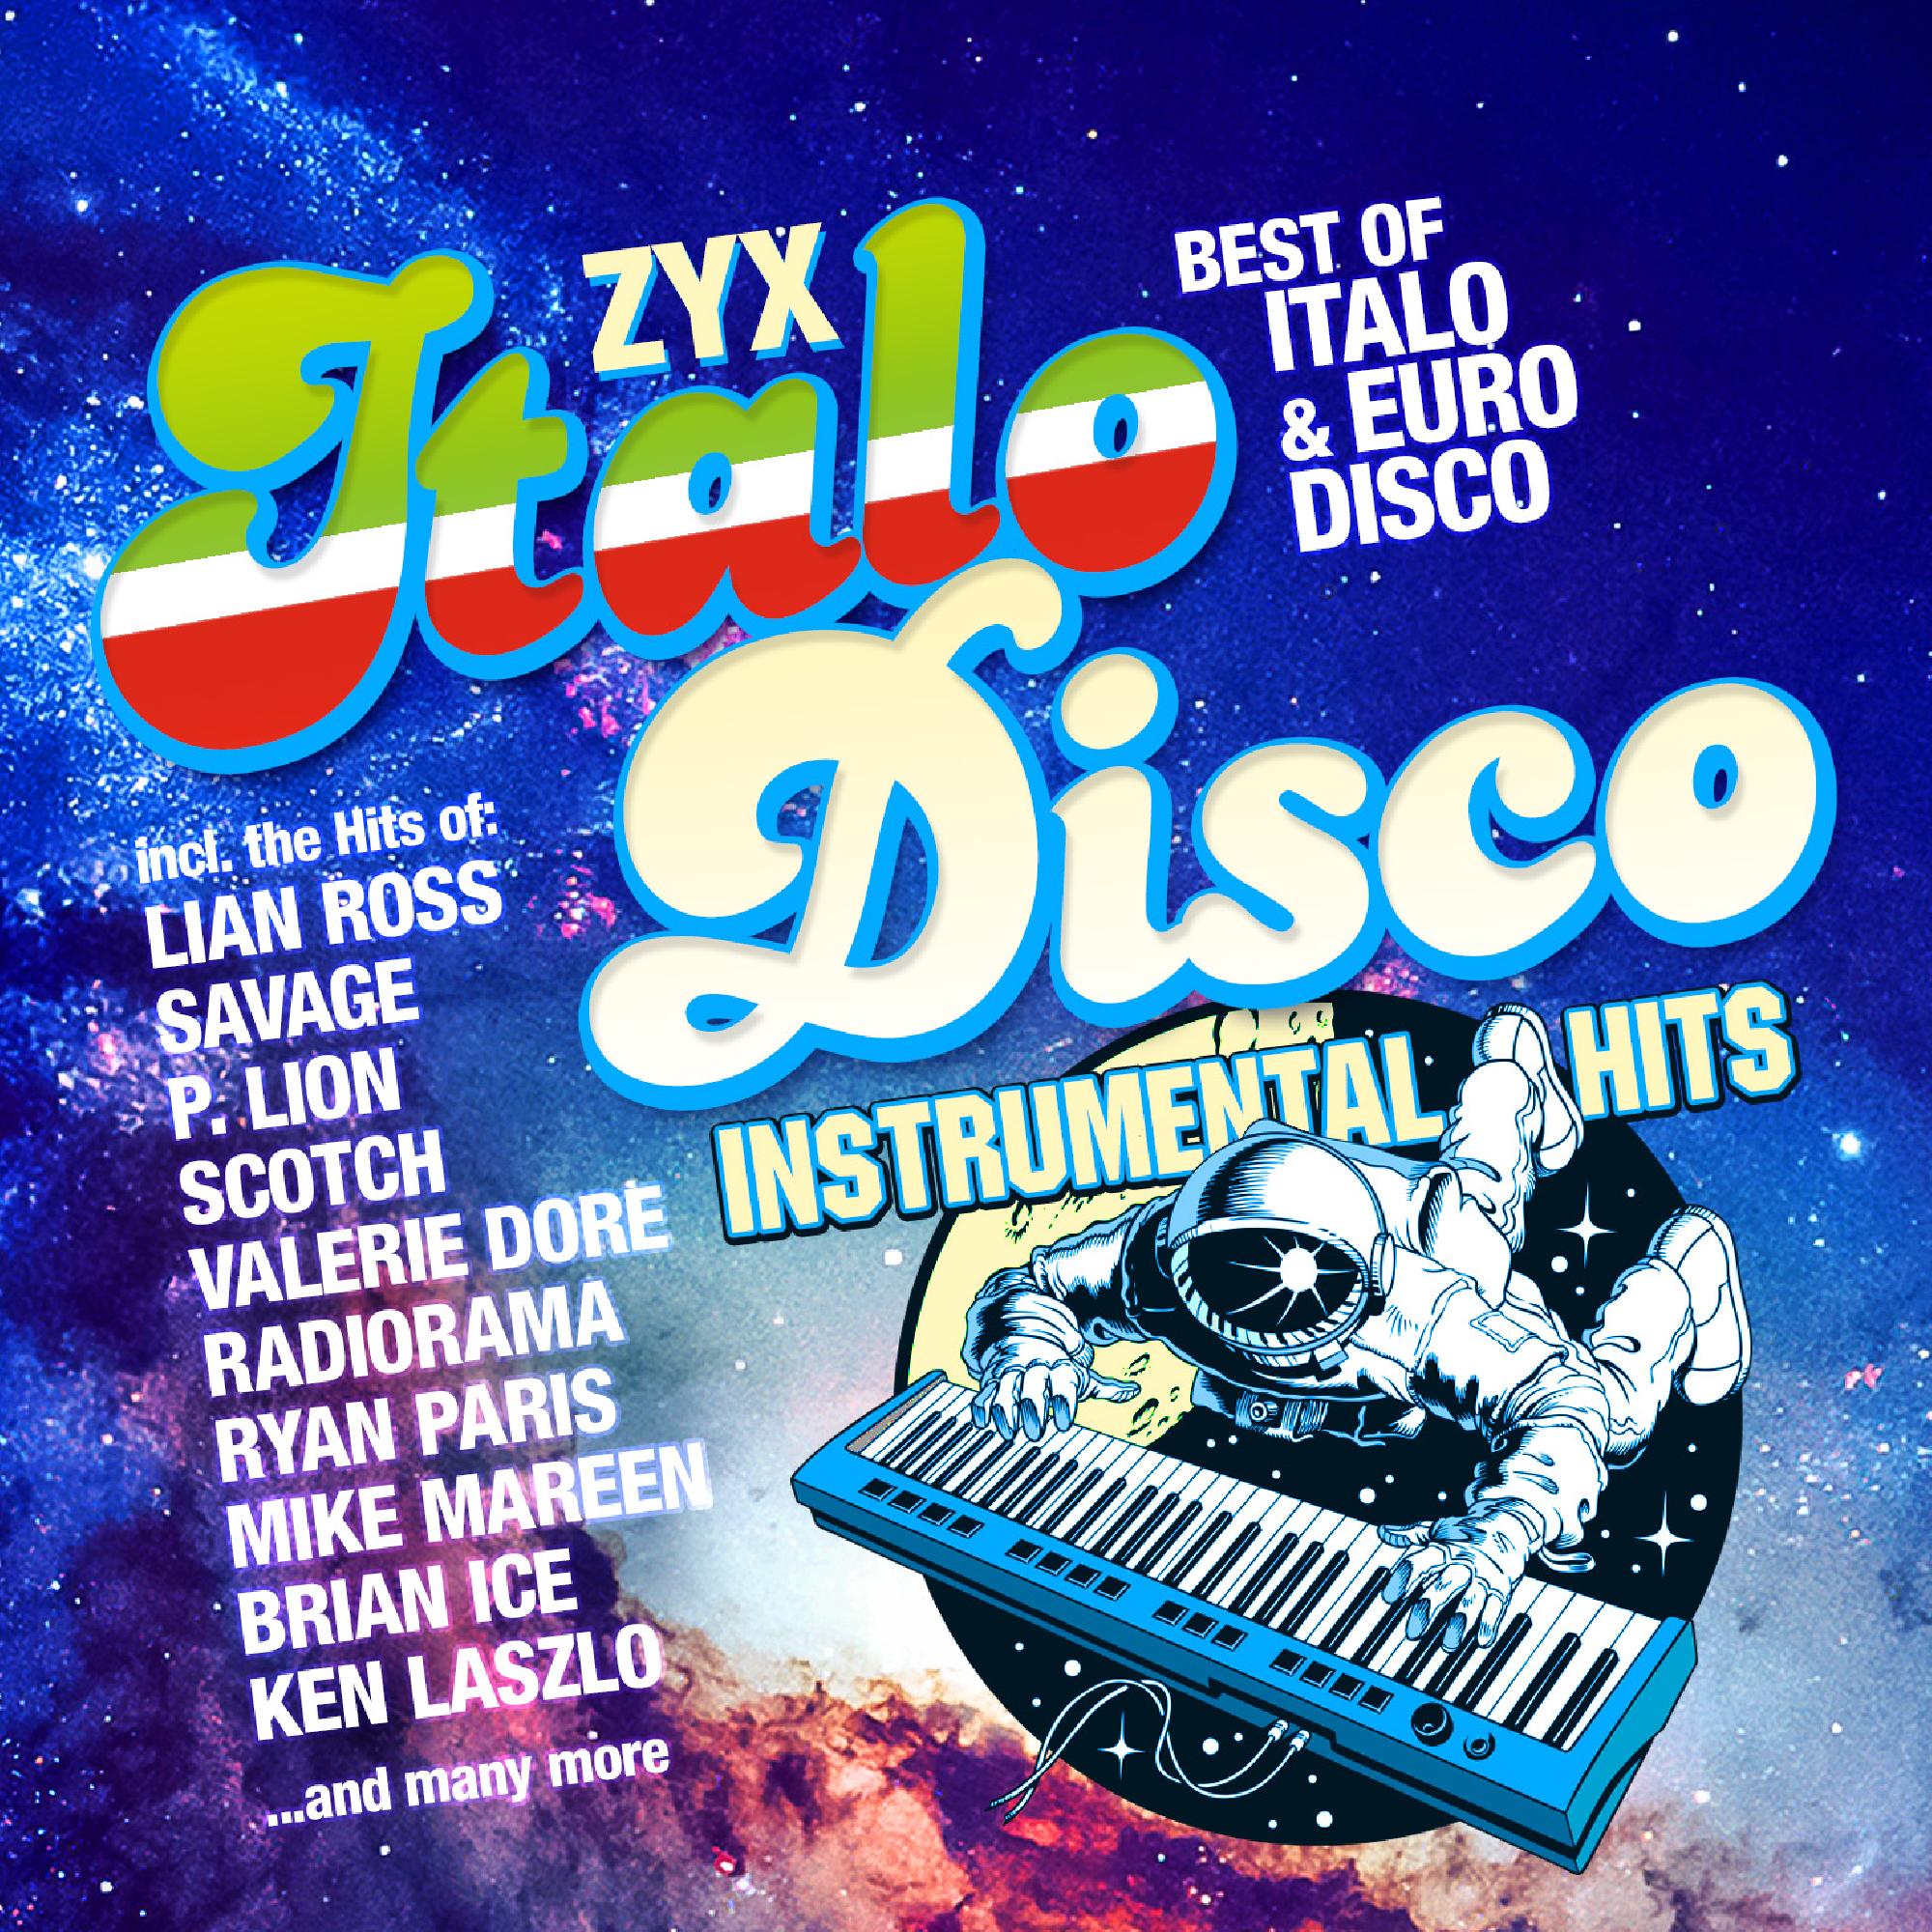 New disco instrumental. Итало диско. Итало диско итало диско. ZYX Italo Disco Hits. Итало диско фото.